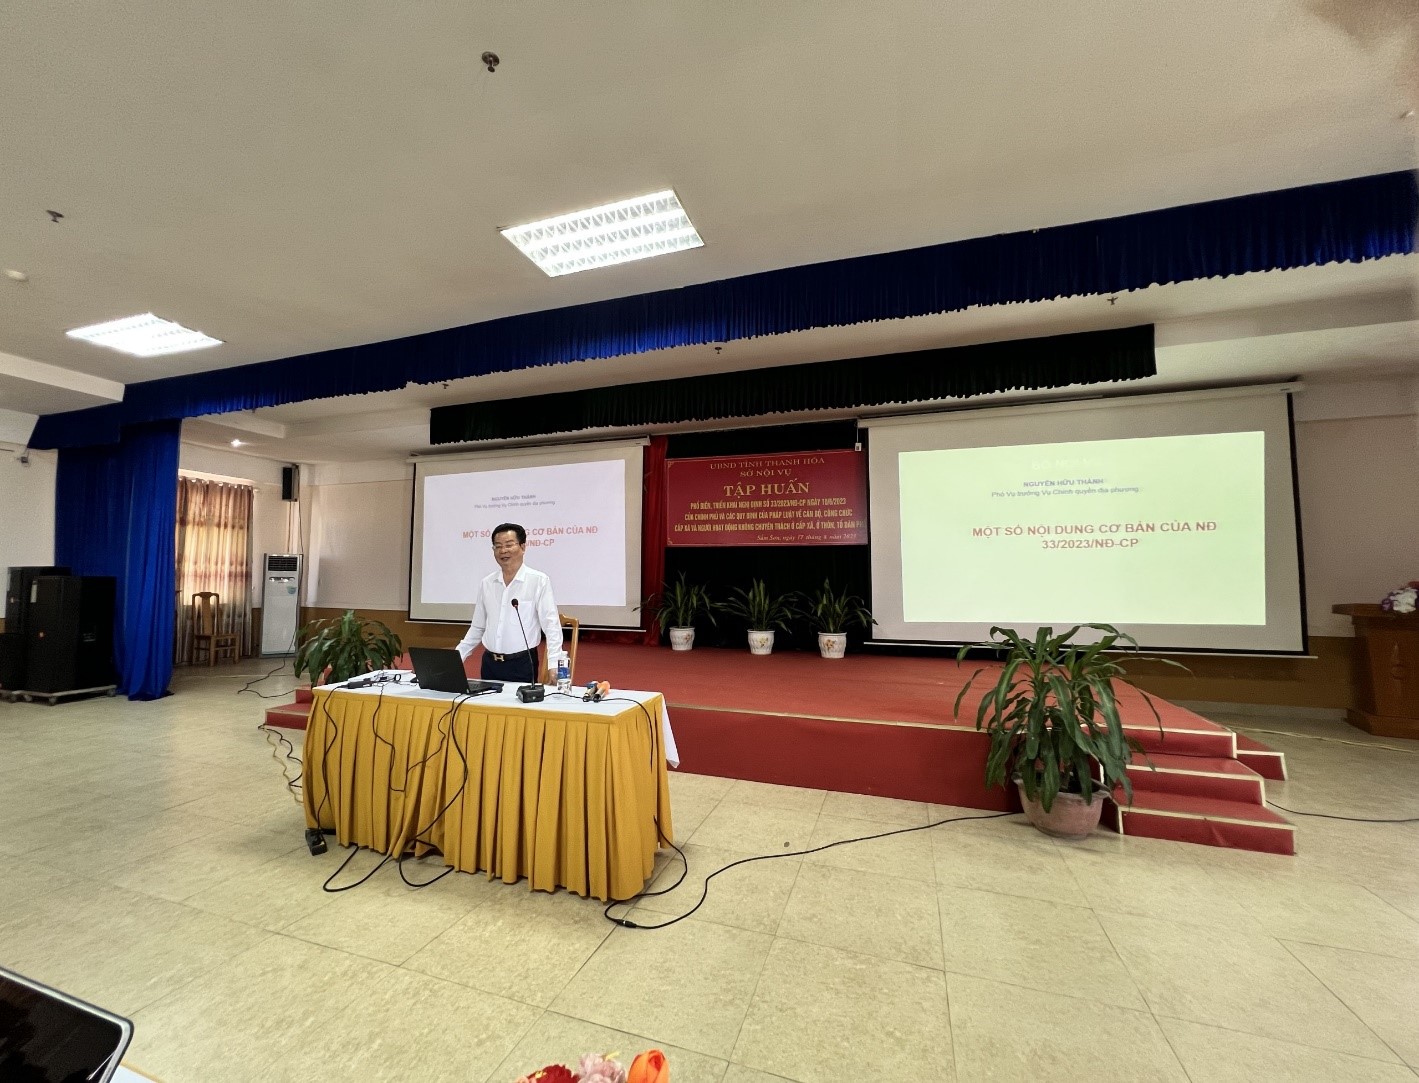 Đồng chí Nguyễn Hữu Thành, Phó Vụ trưởng, Vụ Chính quyền địa phương Bộ Nội vụ triển khai các nội dung tập huấn